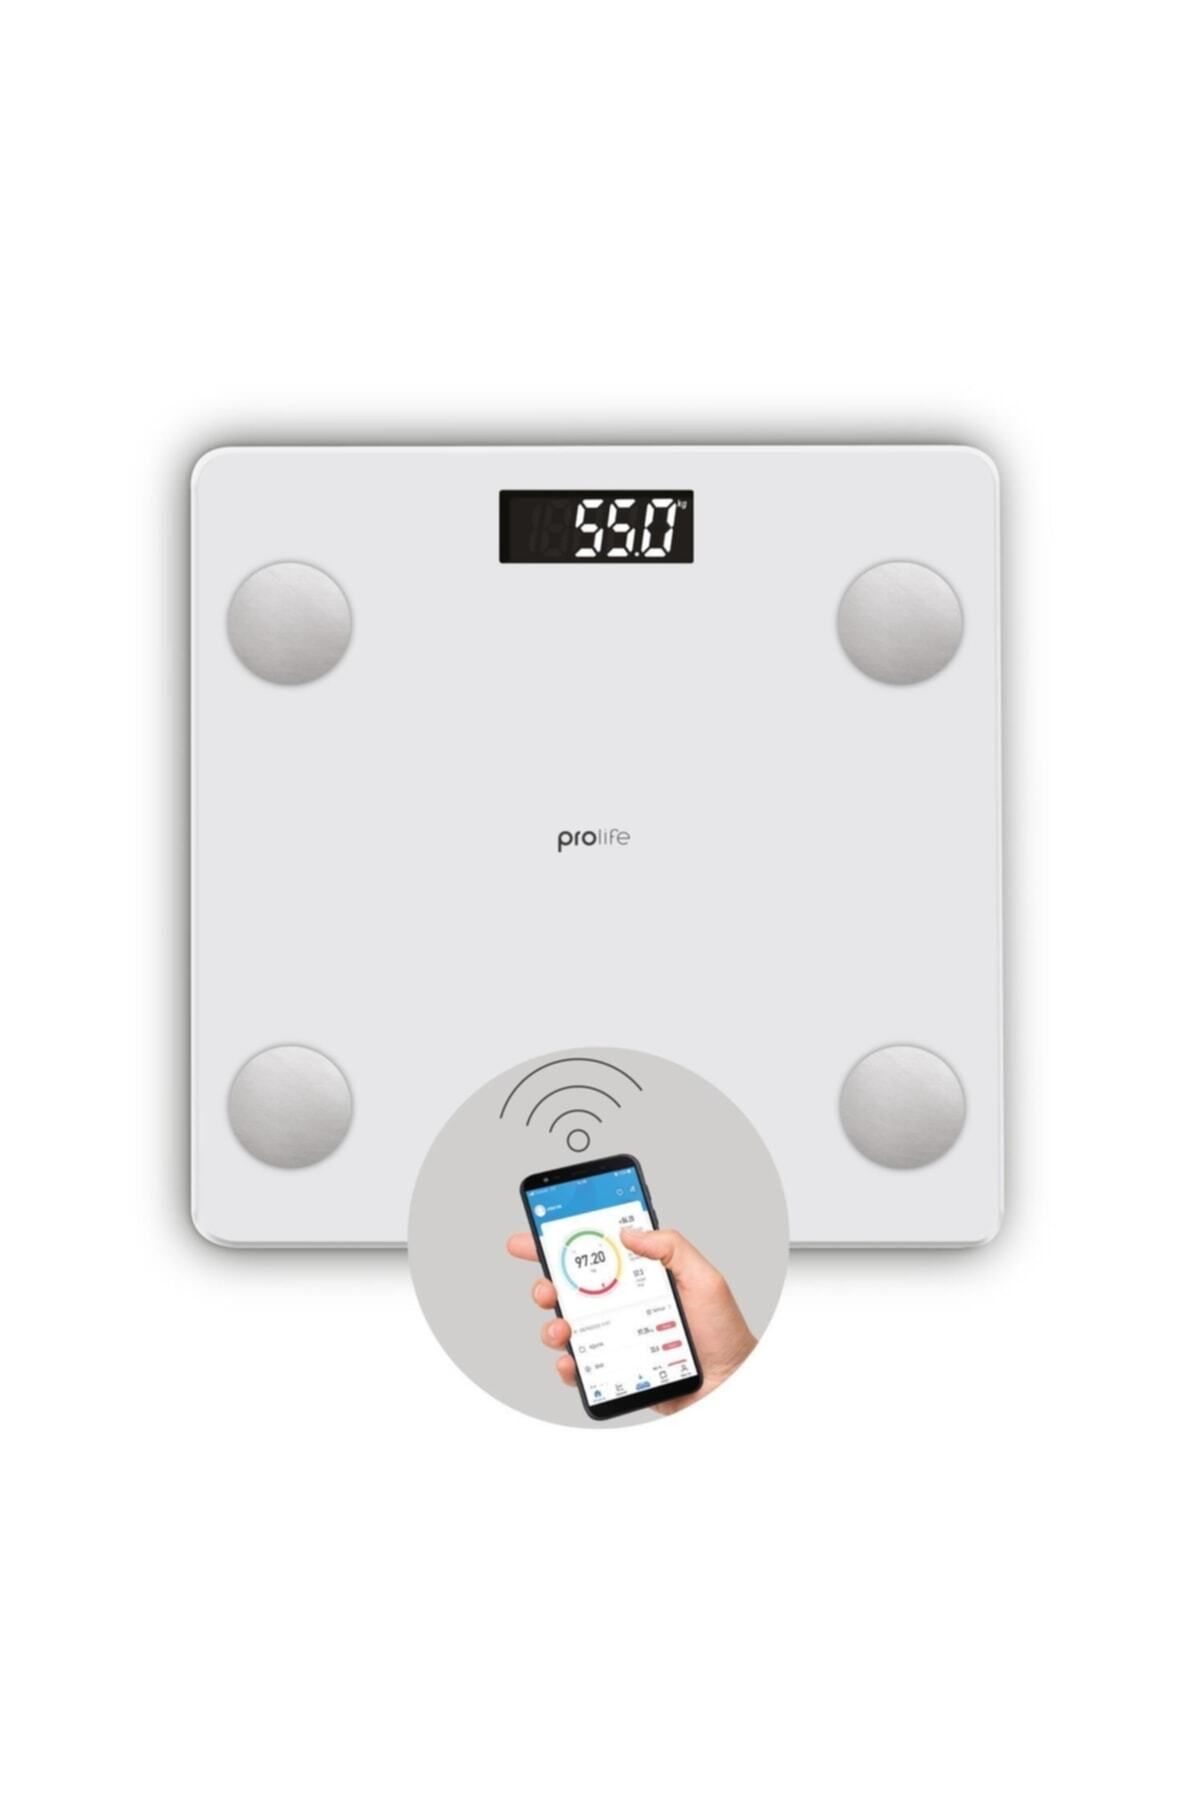 Polosmart Psc12 Prolife Yağ Ölçer Akıllı Bluetooth Tartı Baskül Beyaz